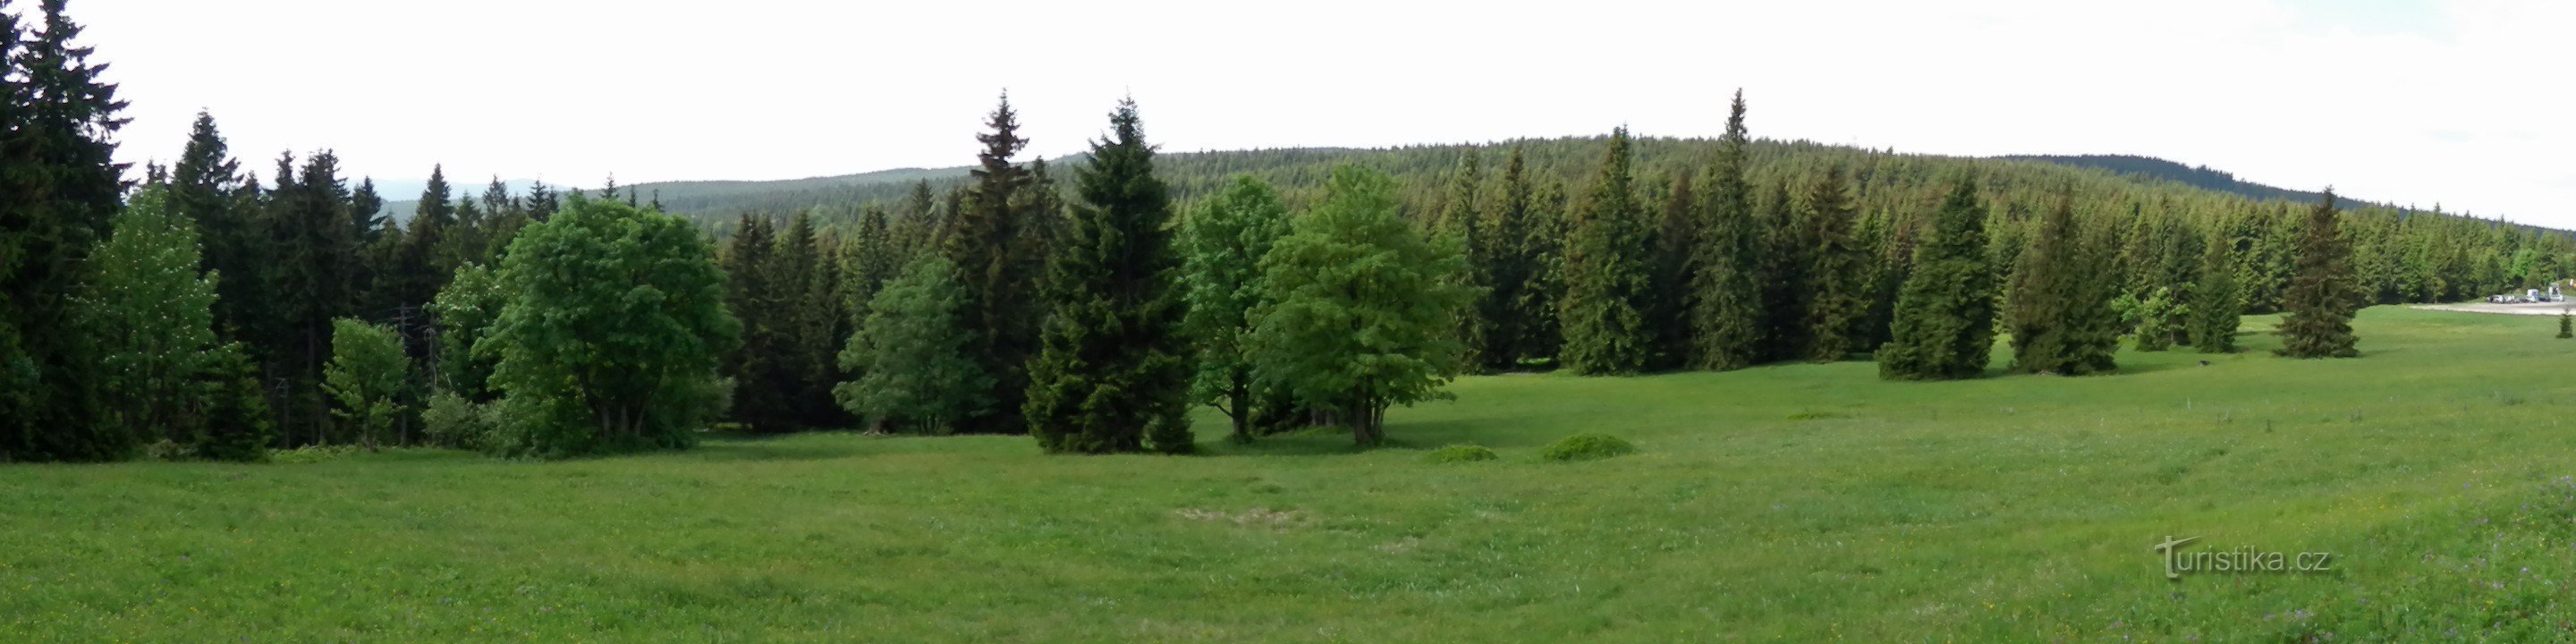 旧草地的全景照片，右侧是 Mořina 停车场